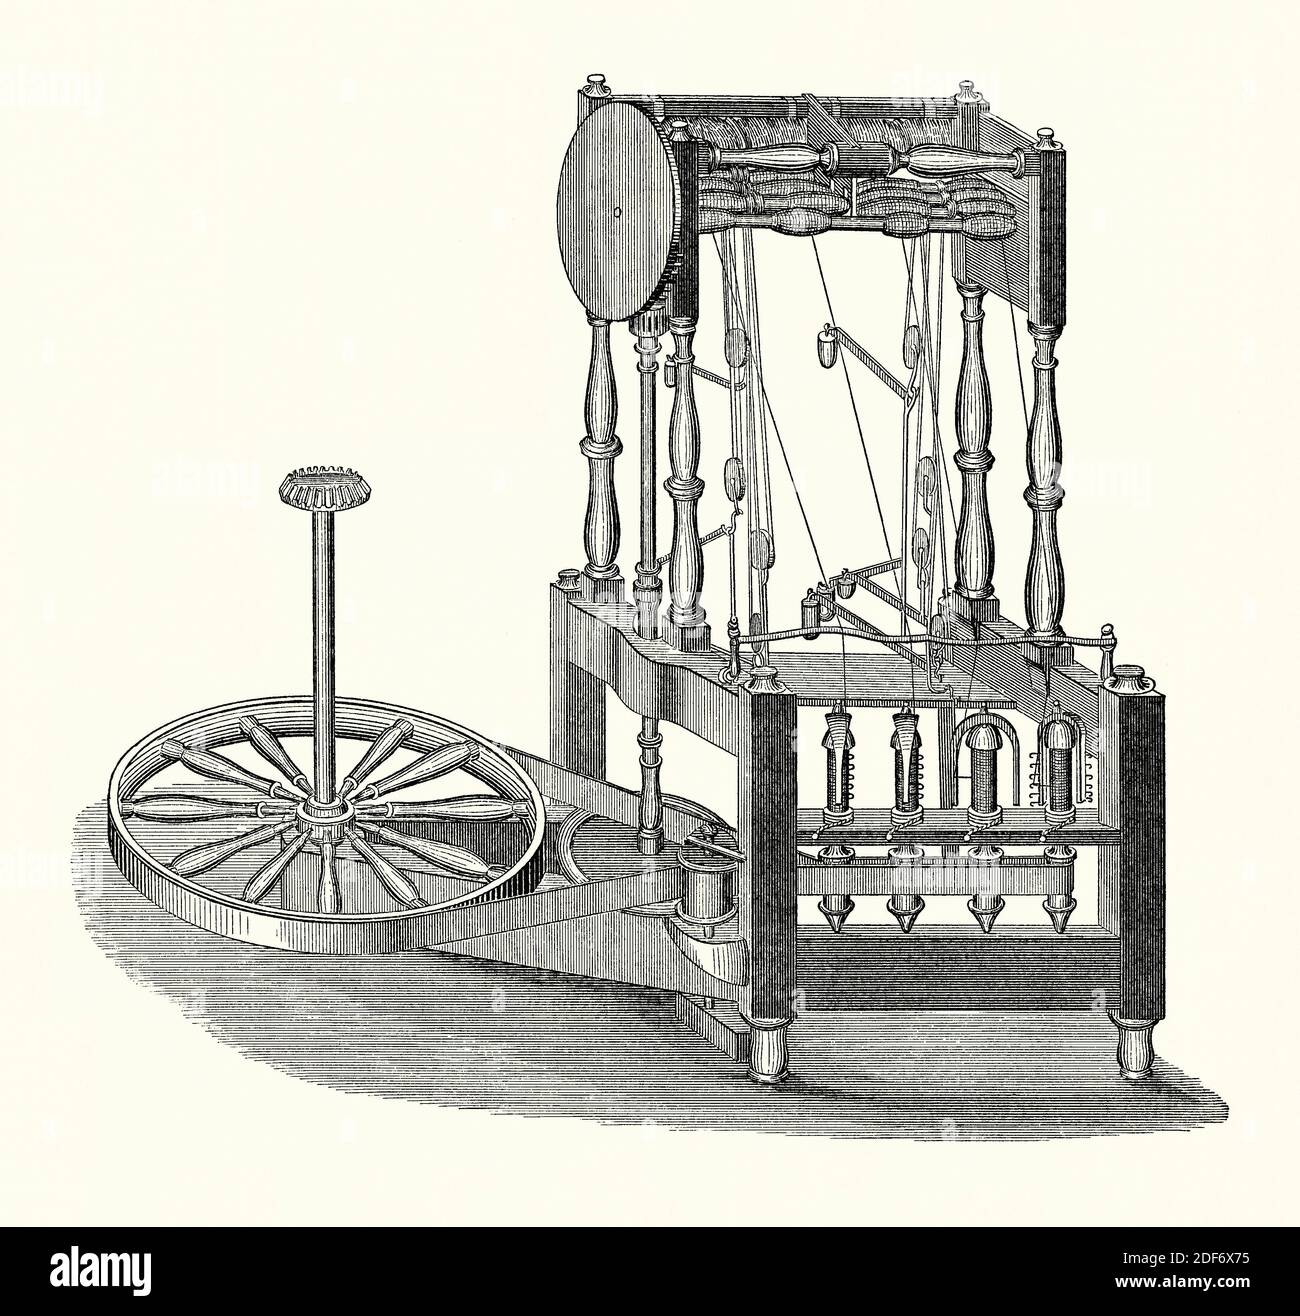 Une ancienne gravure de l’eau ou du cadre de rotation d’Arkwright. Il est issu d'un livre victorien d'ingénierie mécanique des années 1880. Le cadre d'eau est un cadre en rotation qui est alimenté par une roue d'eau. Richard Arkwright (1732–1792), qui l'a breveté en 1769, a conçu la machine pour la fabrication de fils de coton. Il a été utilisé pour la première fois en 1765 et a pu faire tourner 96 threads à la fois, bien plus vite que jamais. En 1770, Arkwright et Partners construisit une usine alimentée par l'eau à Cromford, Derbyshire, Angleterre, Royaume-Uni. Elle employait bientôt plus de 300 personnes et est souvent considérée comme la première usine de la révolution industrielle. Banque D'Images